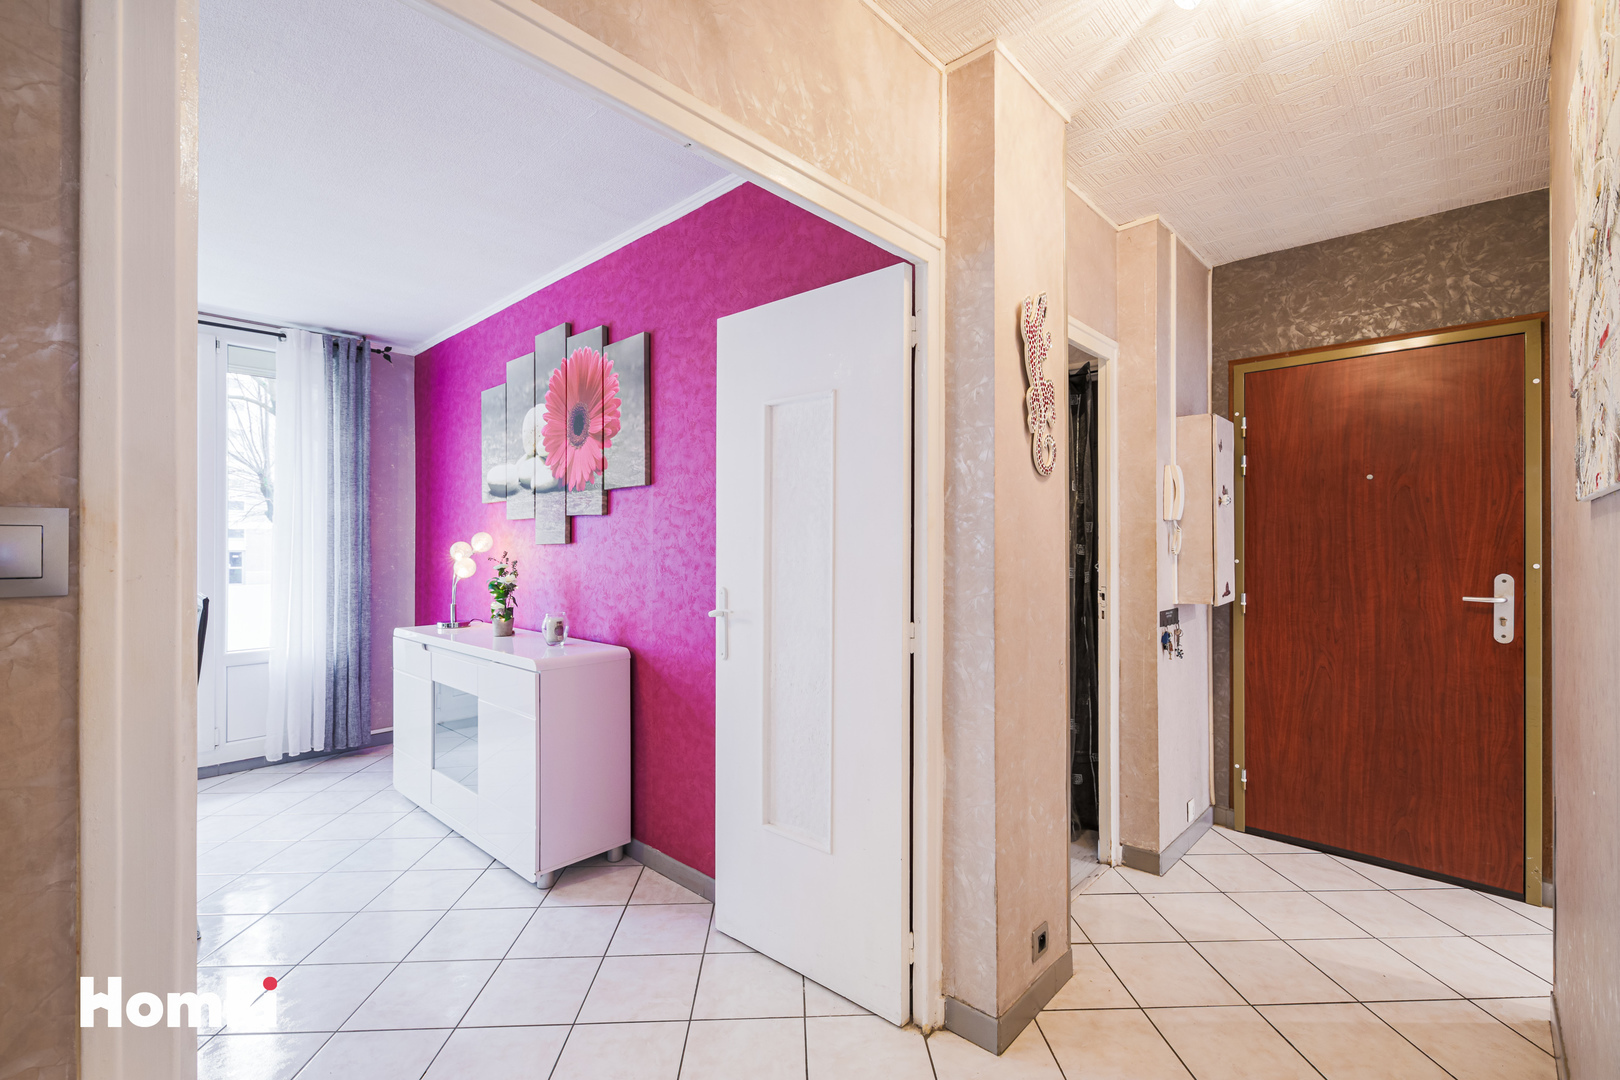 Homki - Vente Appartement  de 86.0 m² à Le Pont-de-Claix 38800